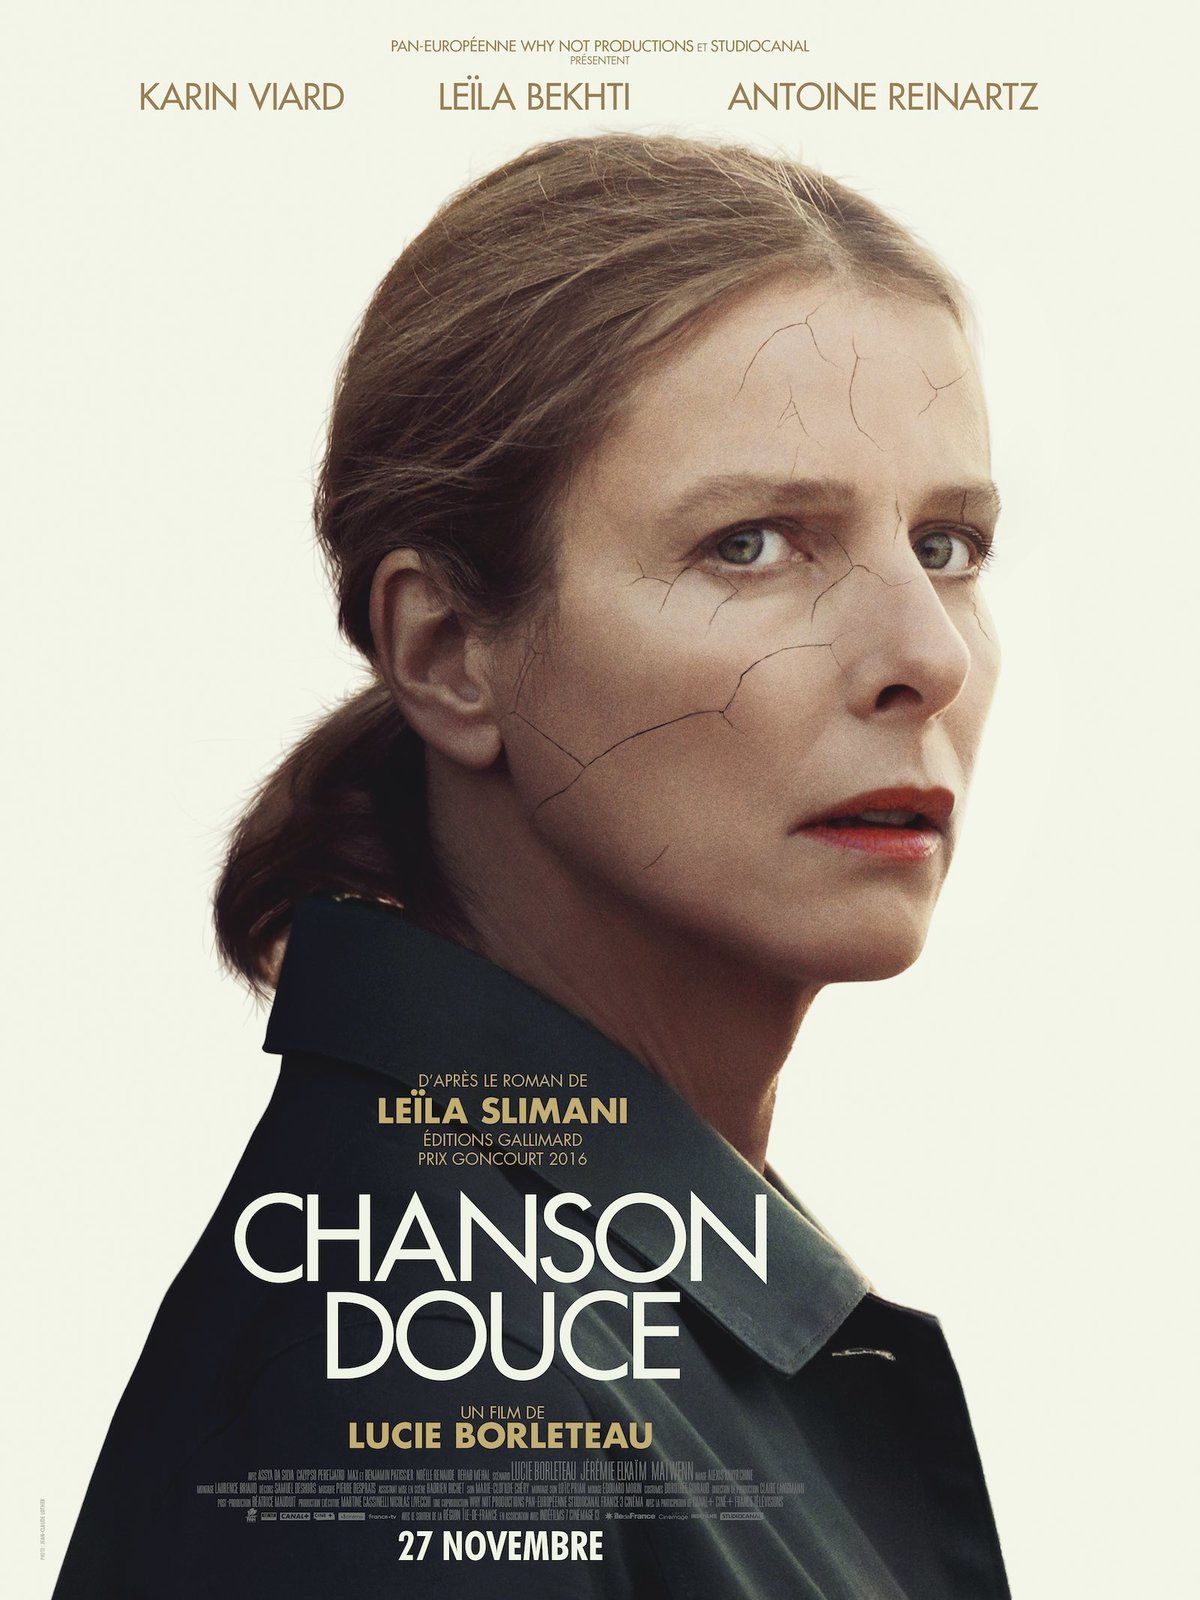 CHANSON DOUCE (BANDE-ANNONCE) avec Karin Viard, Leïla Bekhti - Le 27 novembre 2019 au cinéma